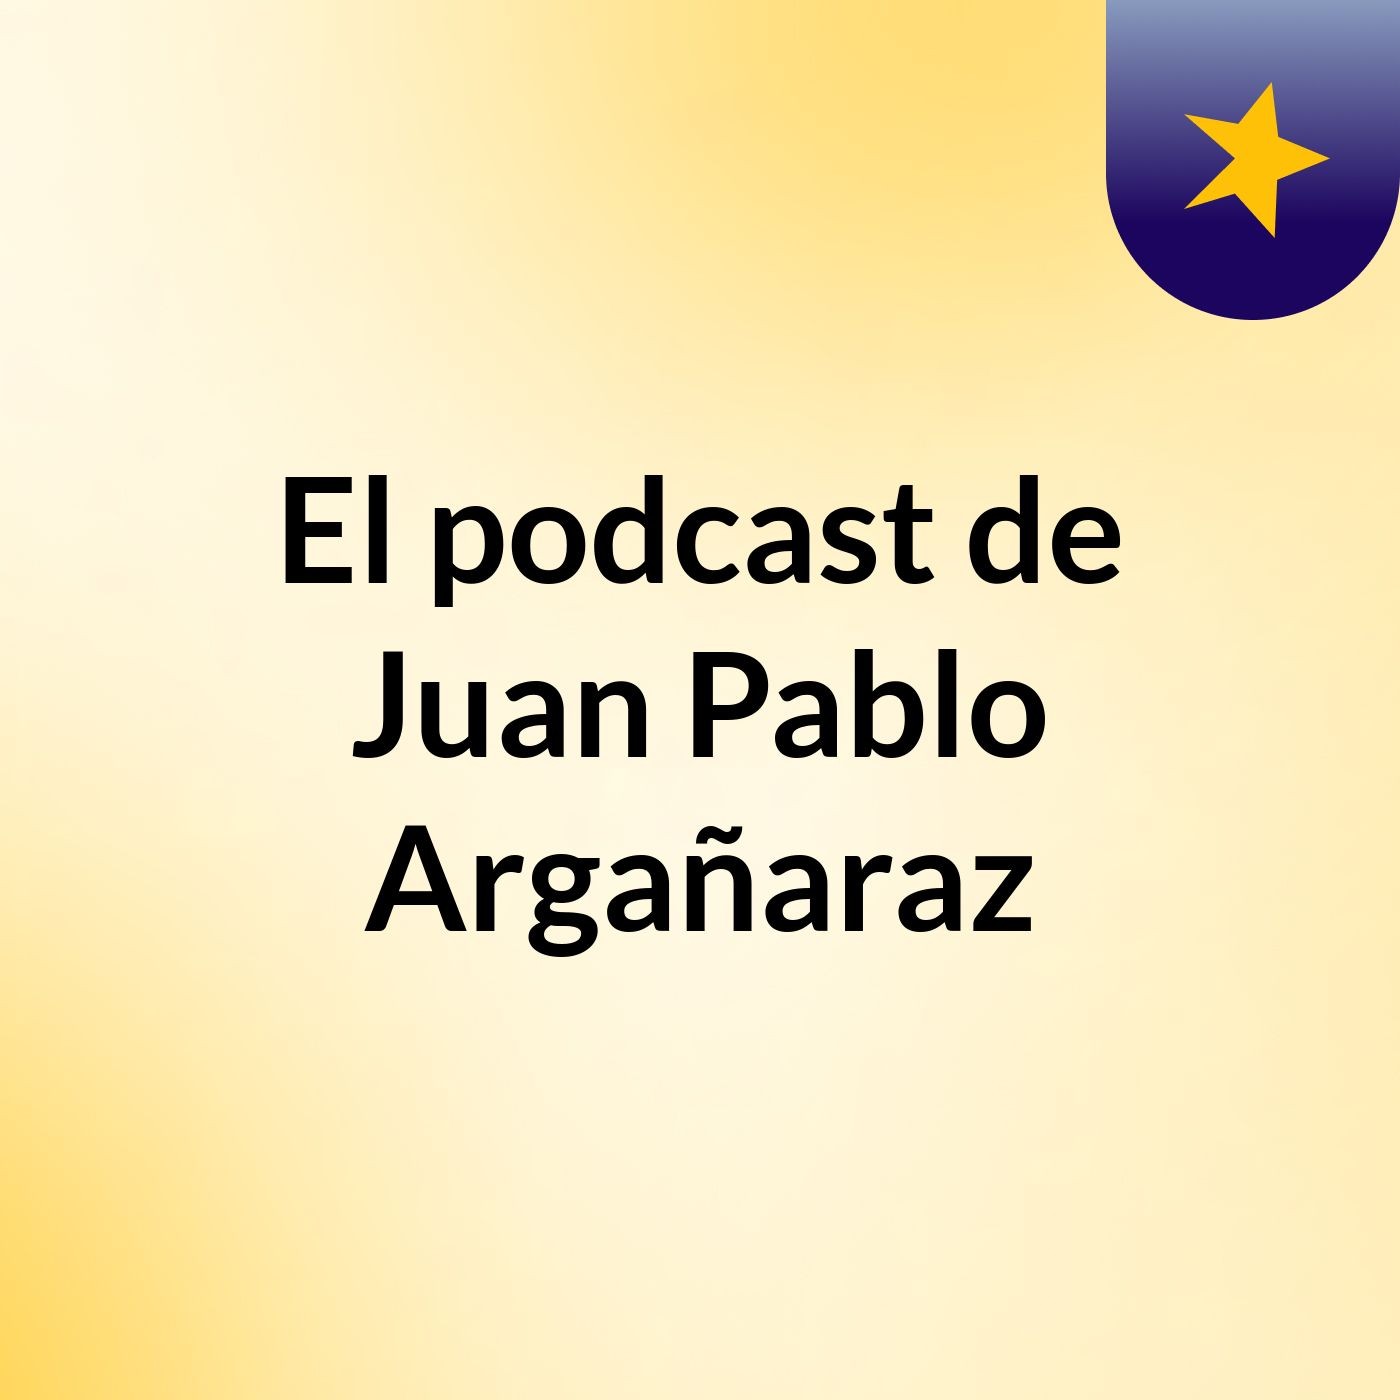 El podcast de Juan Pablo Argañaraz